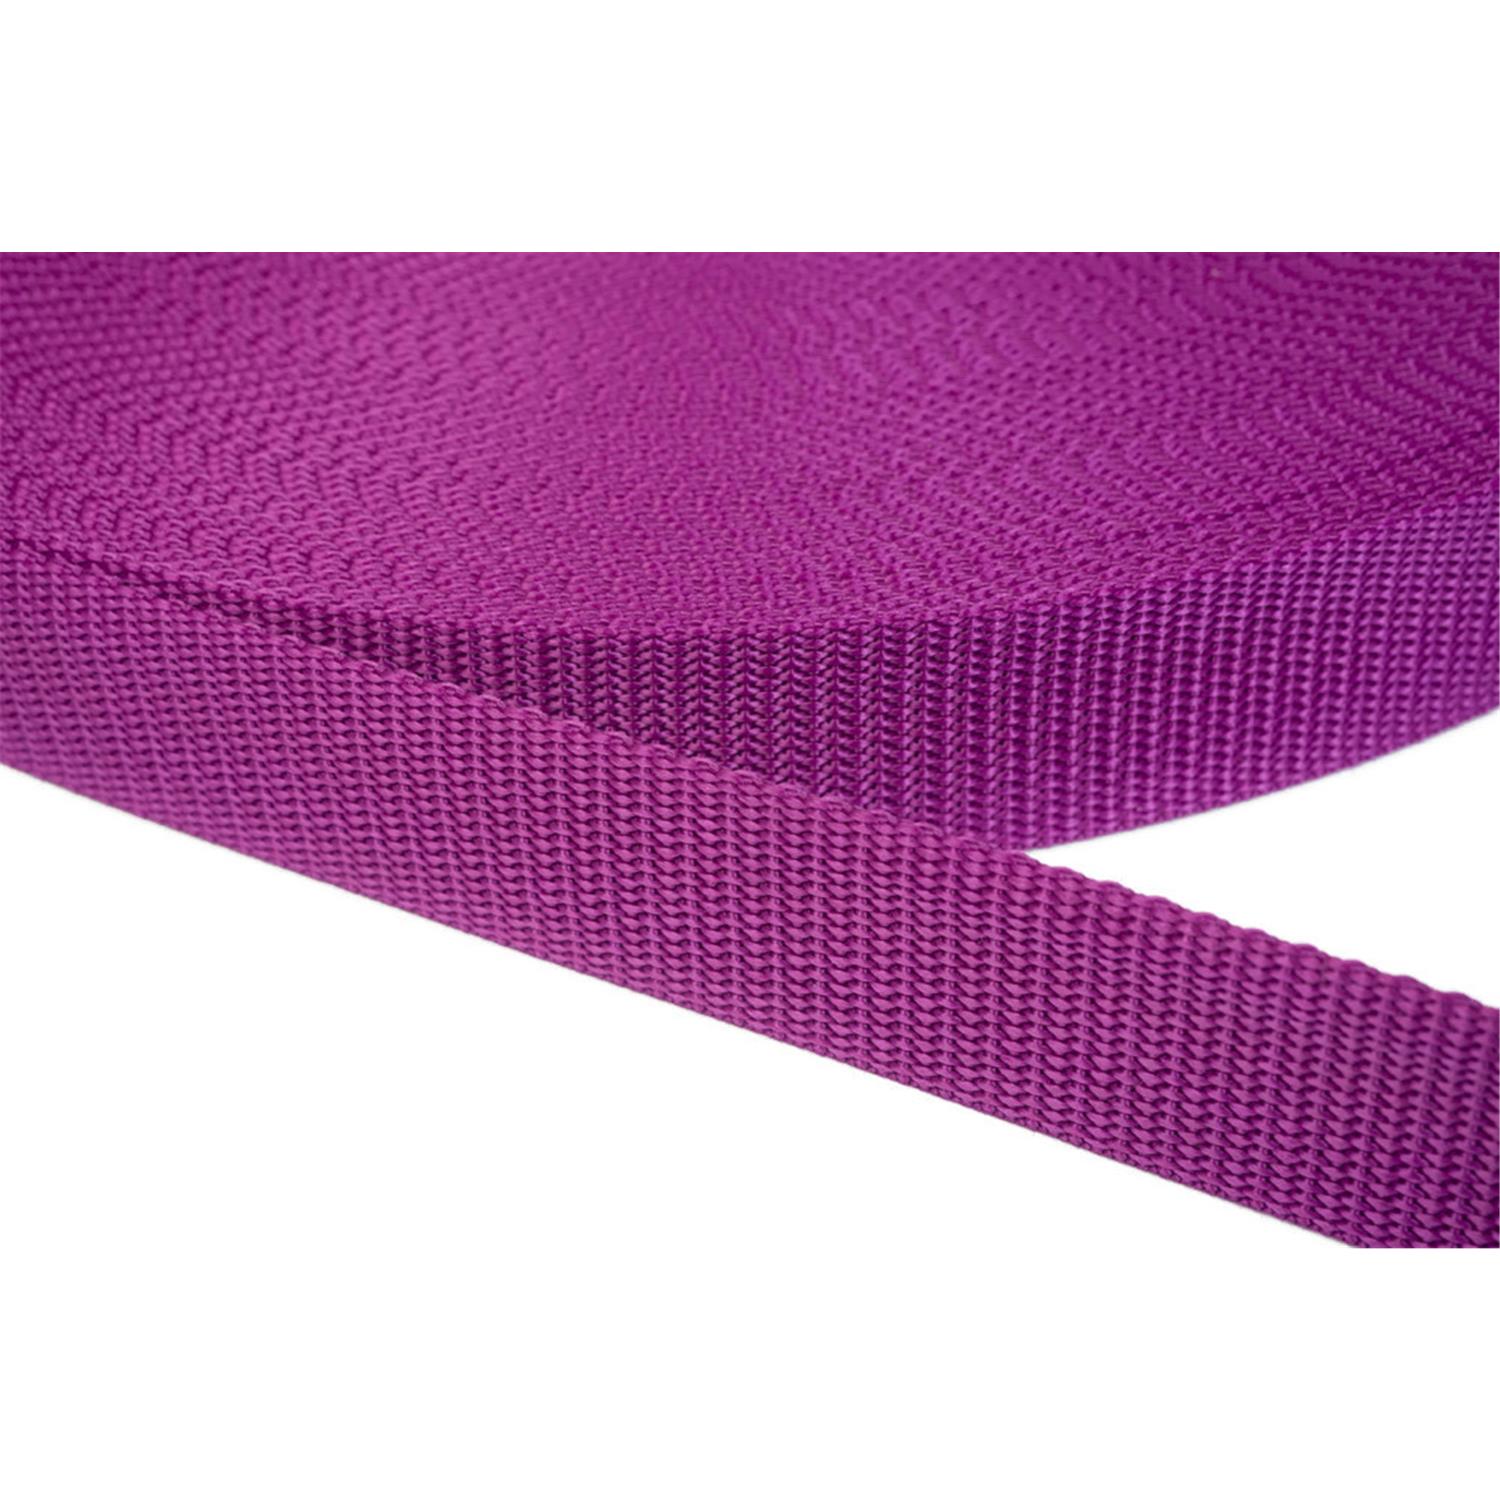 Gurtband 25mm breit aus Polypropylen in 41 Farben 22 - violettrot 50 Meter